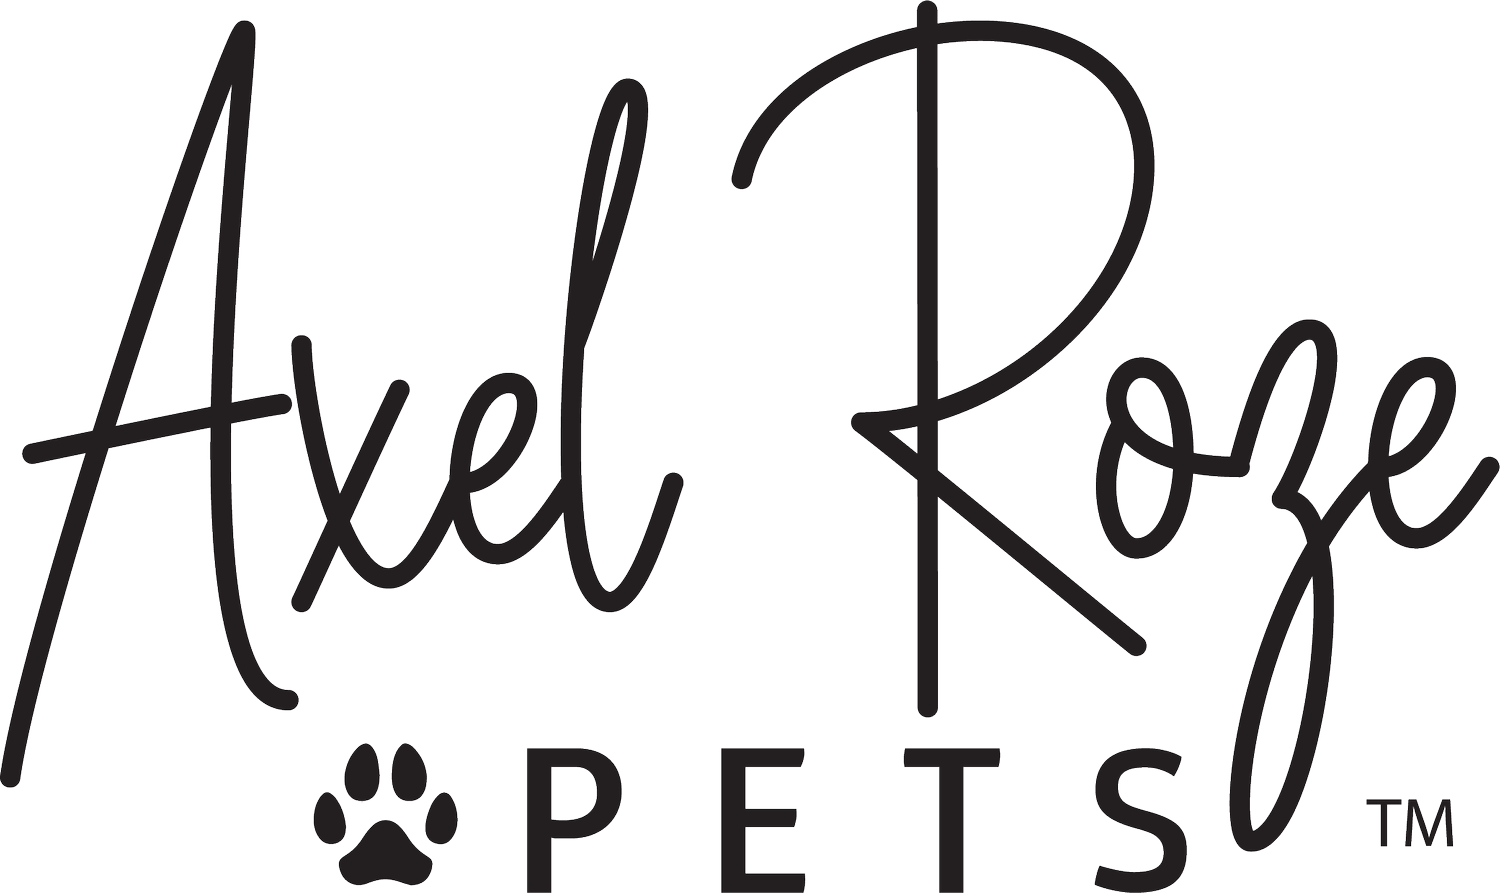 Axel Roze Pets